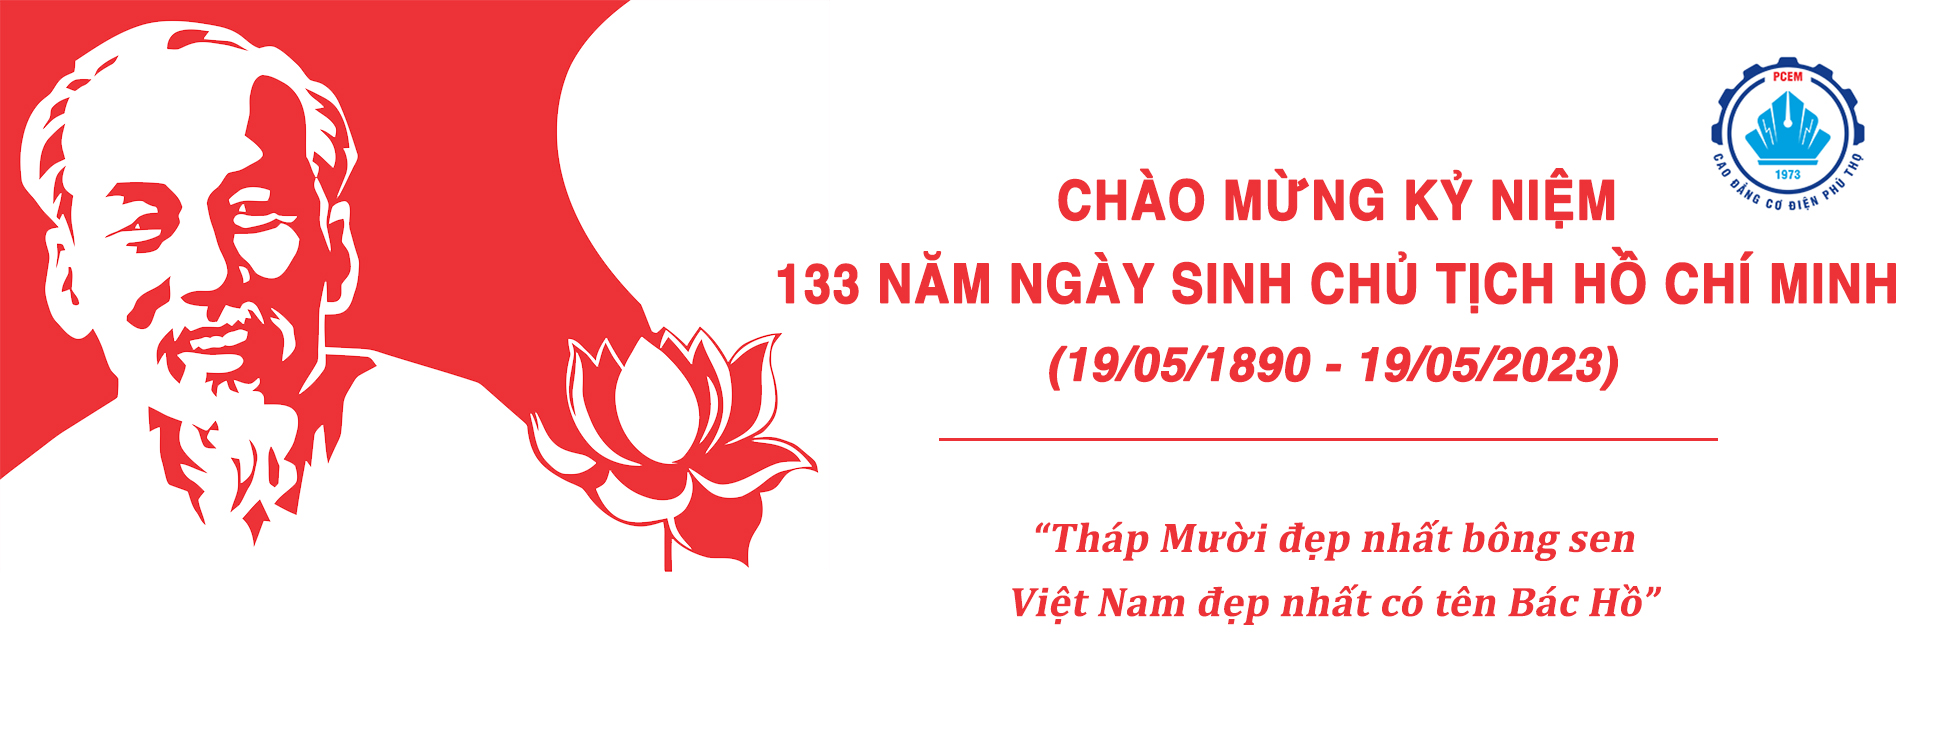 Chào mừng kỷ niệm 133 năm ngày sinh chủ tịch Hồ Chí Minh